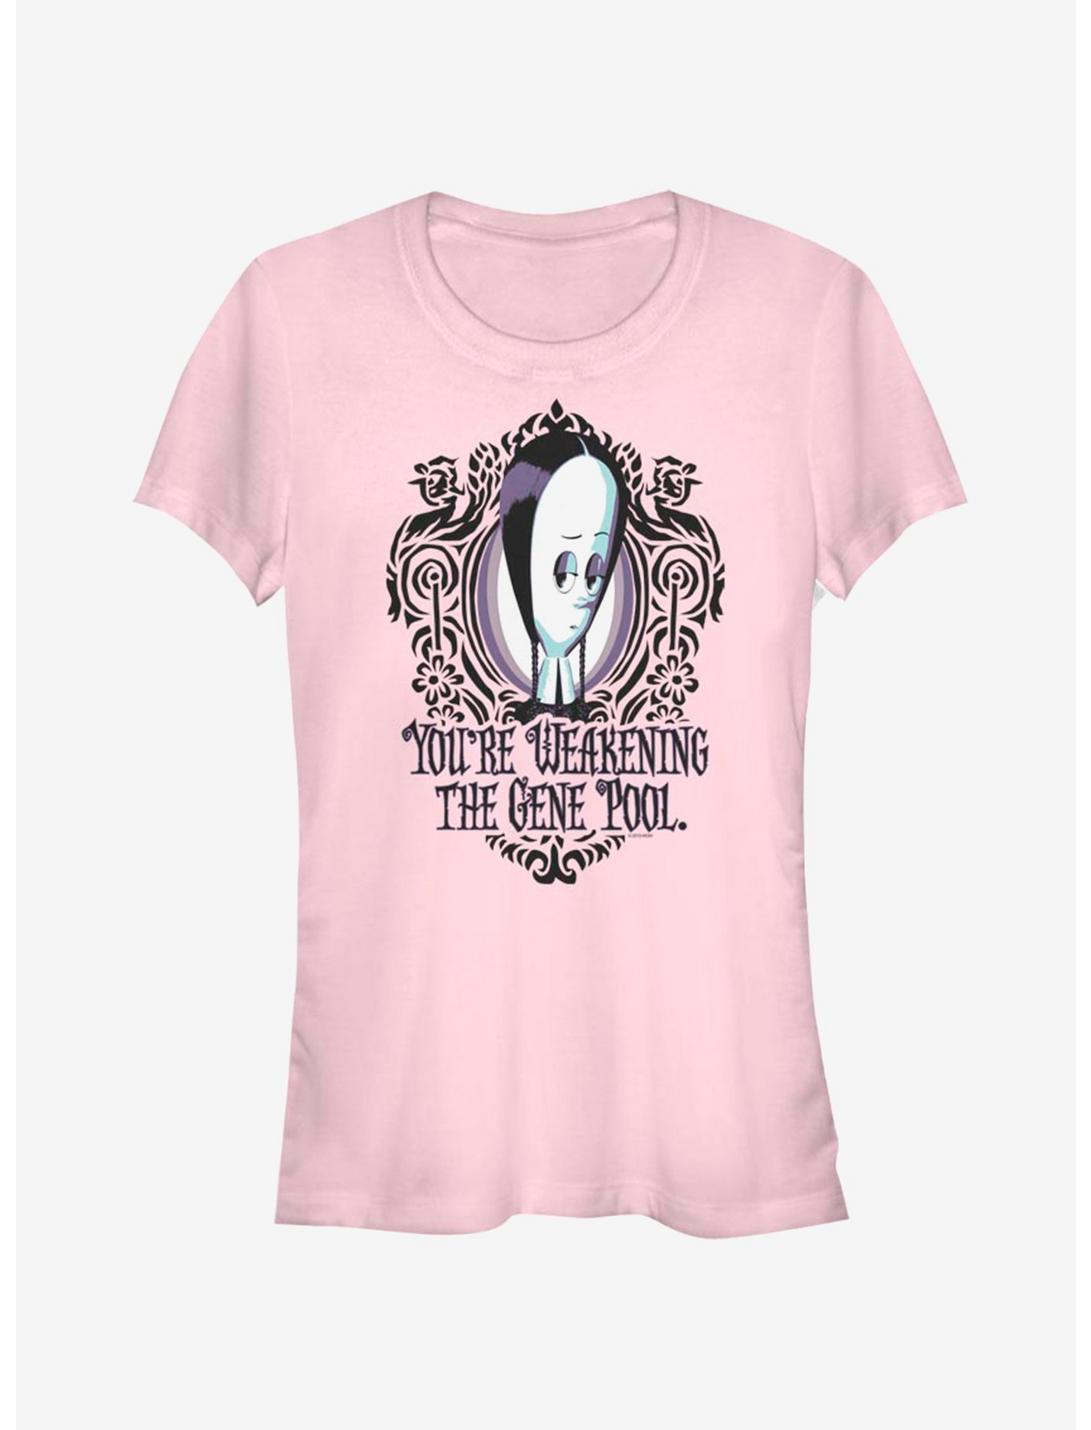 The Addams Family Weaken Gene Pool Girls T-Shirt, LIGHT PINK, hi-res